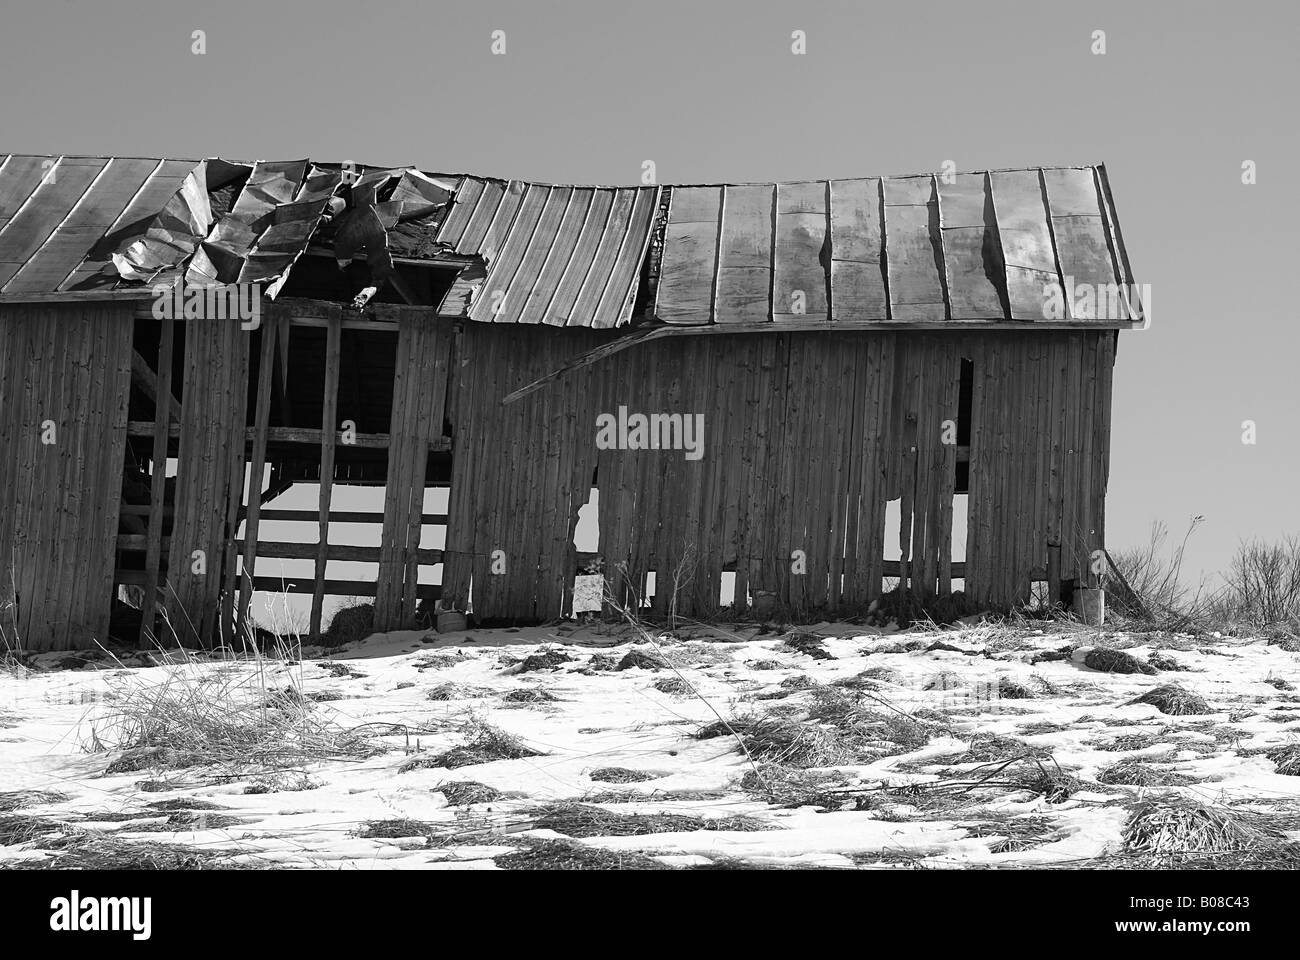 L'abandon abandonnés Vermont grange à foin sur une colline à la fin de l'hiver avec du foin et de la neige en premier plan noir et blanc Banque D'Images